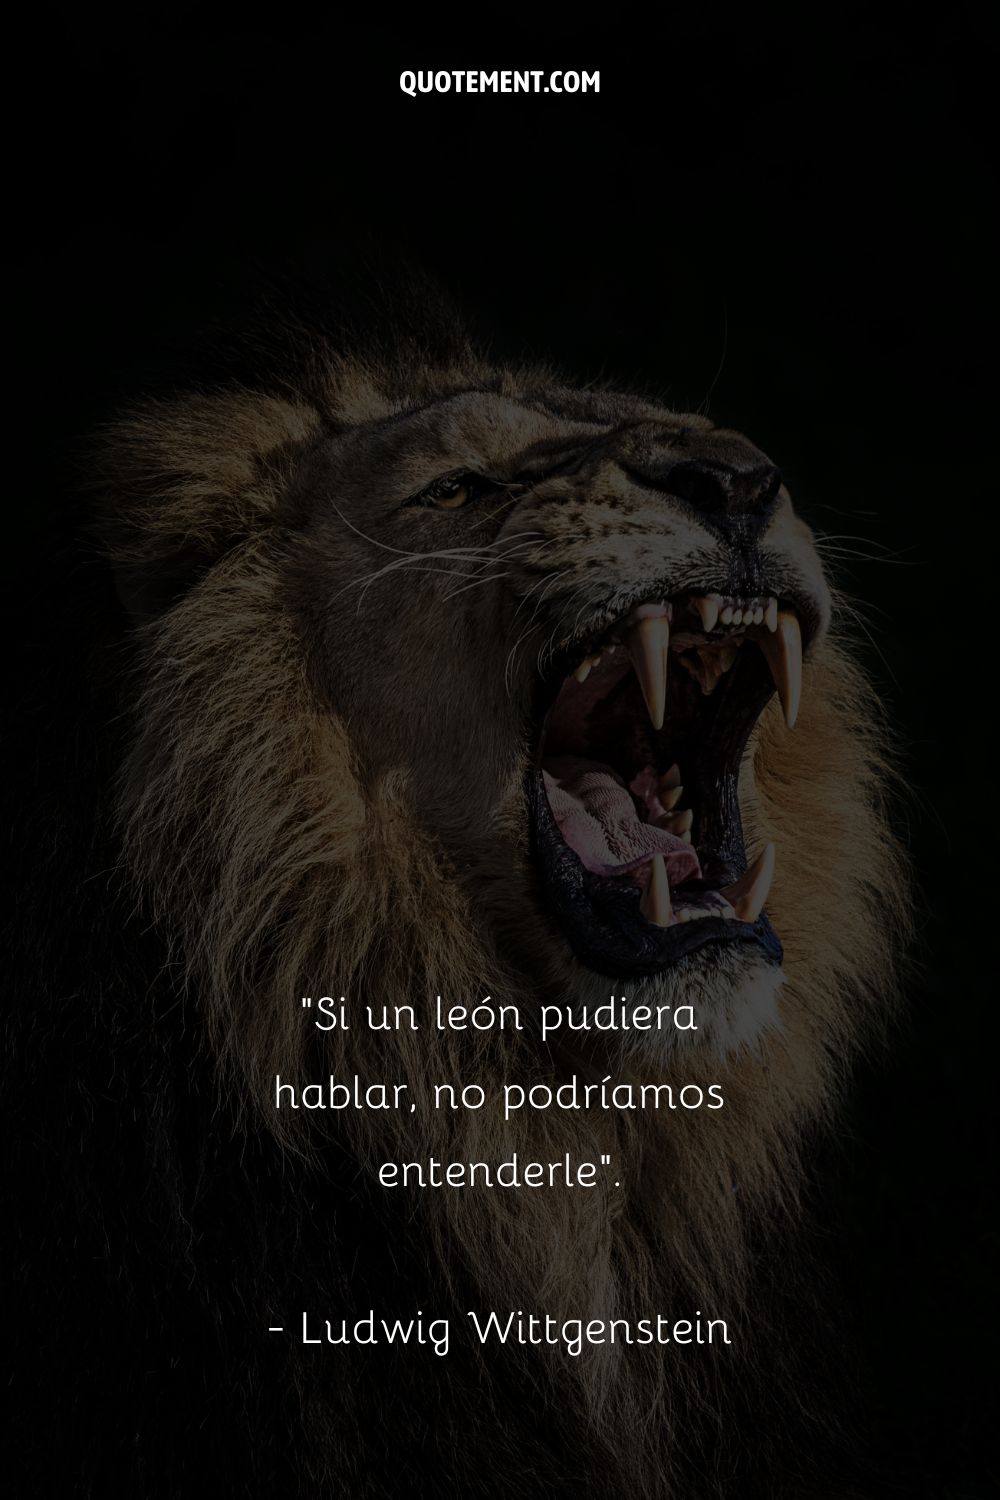 imagen o león rugiente que representa la vida cita sobre leones